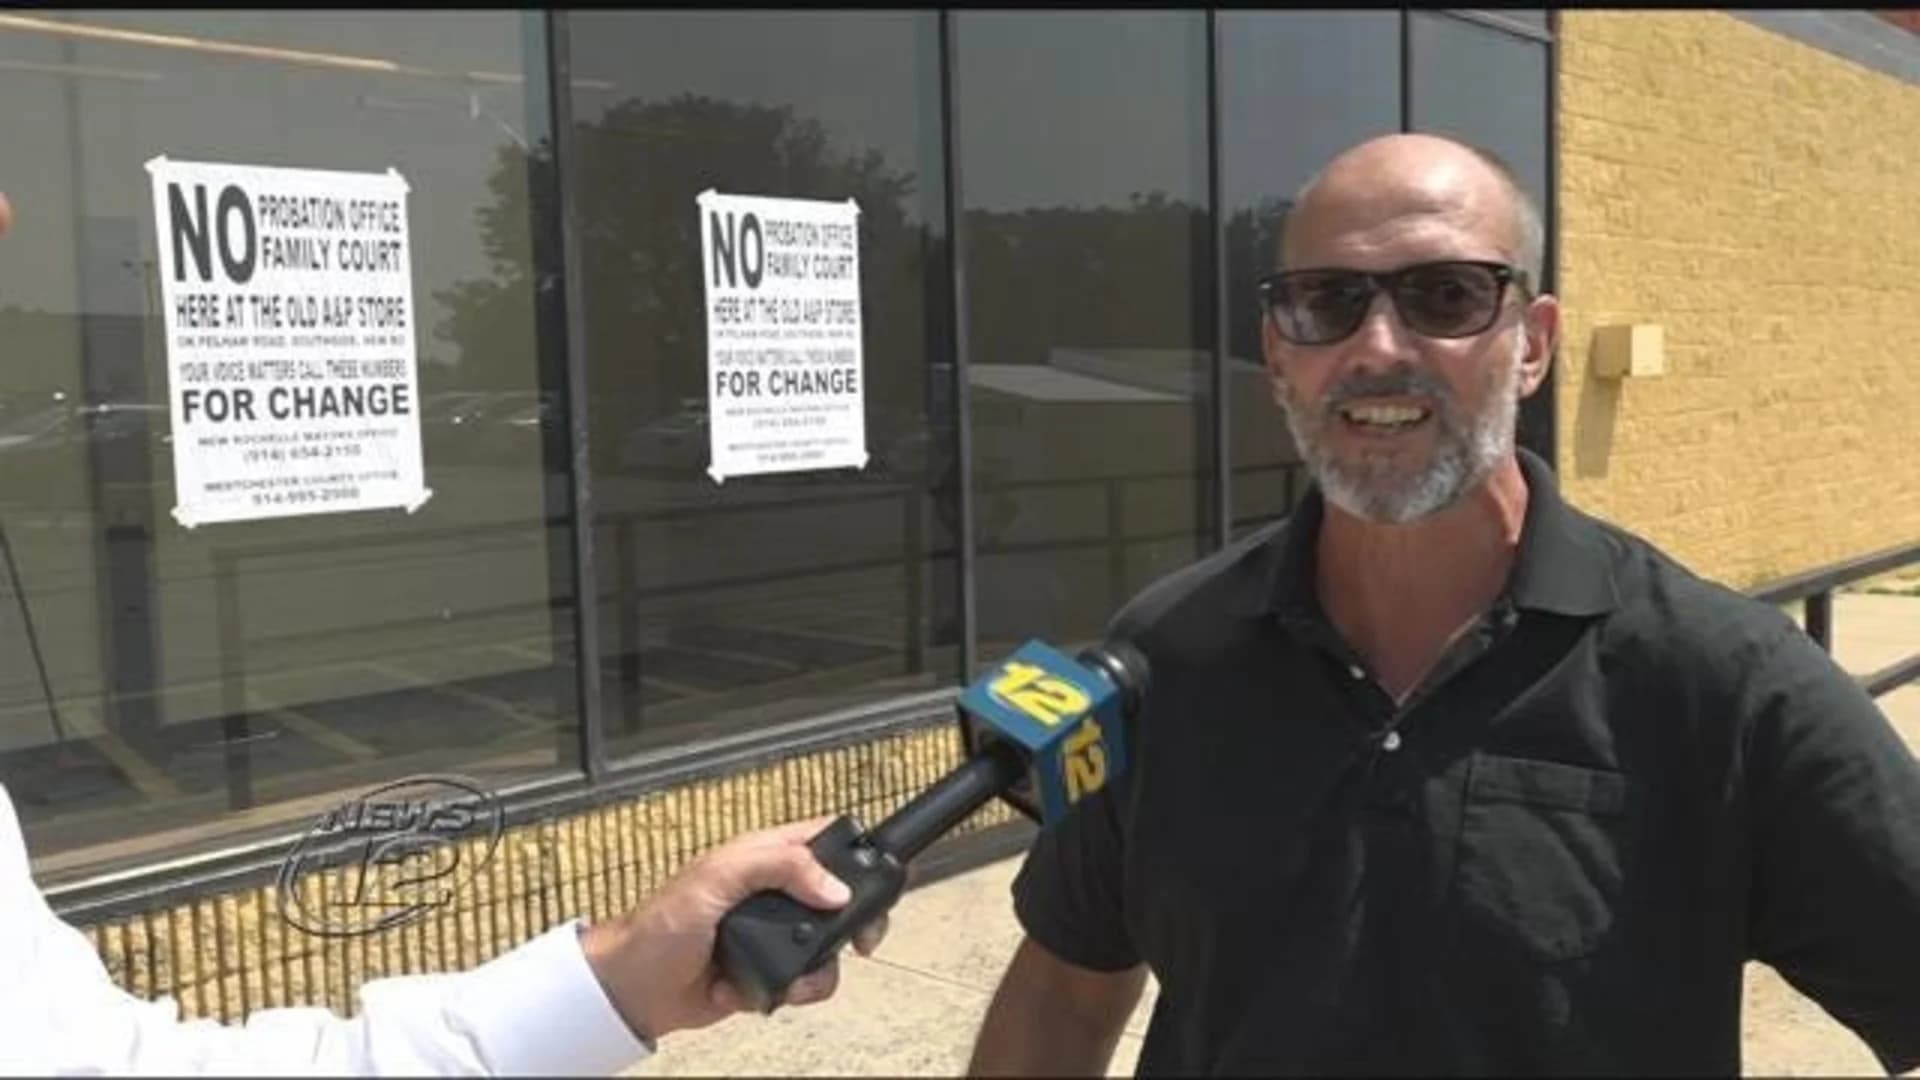 Pelham Road residents oppose New Rochelle Family Court relocation